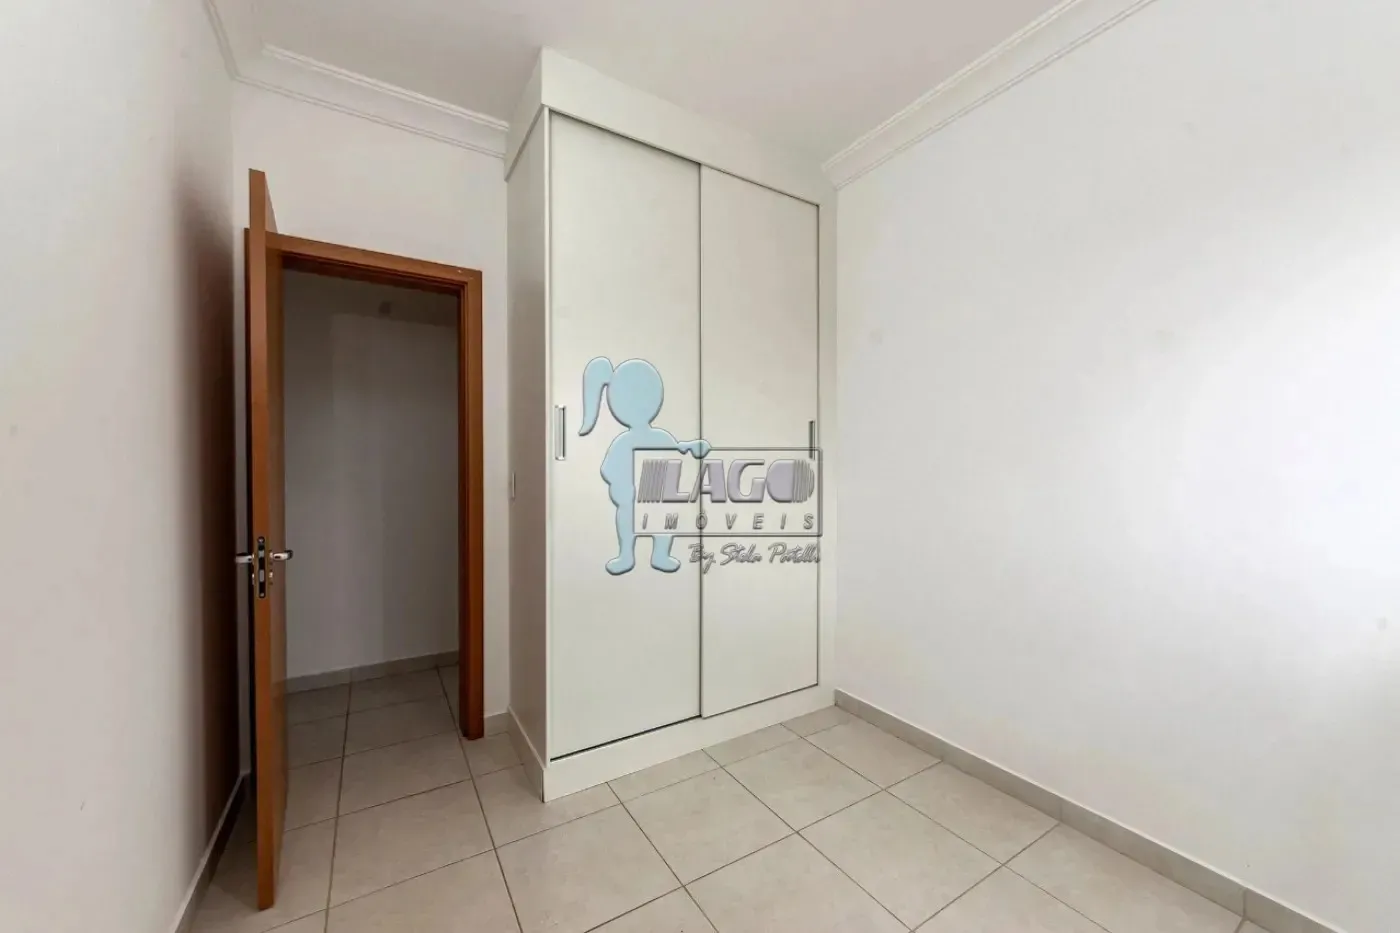 Comprar Apartamentos / Padrão em Ribeirão Preto R$ 390.000,00 - Foto 4